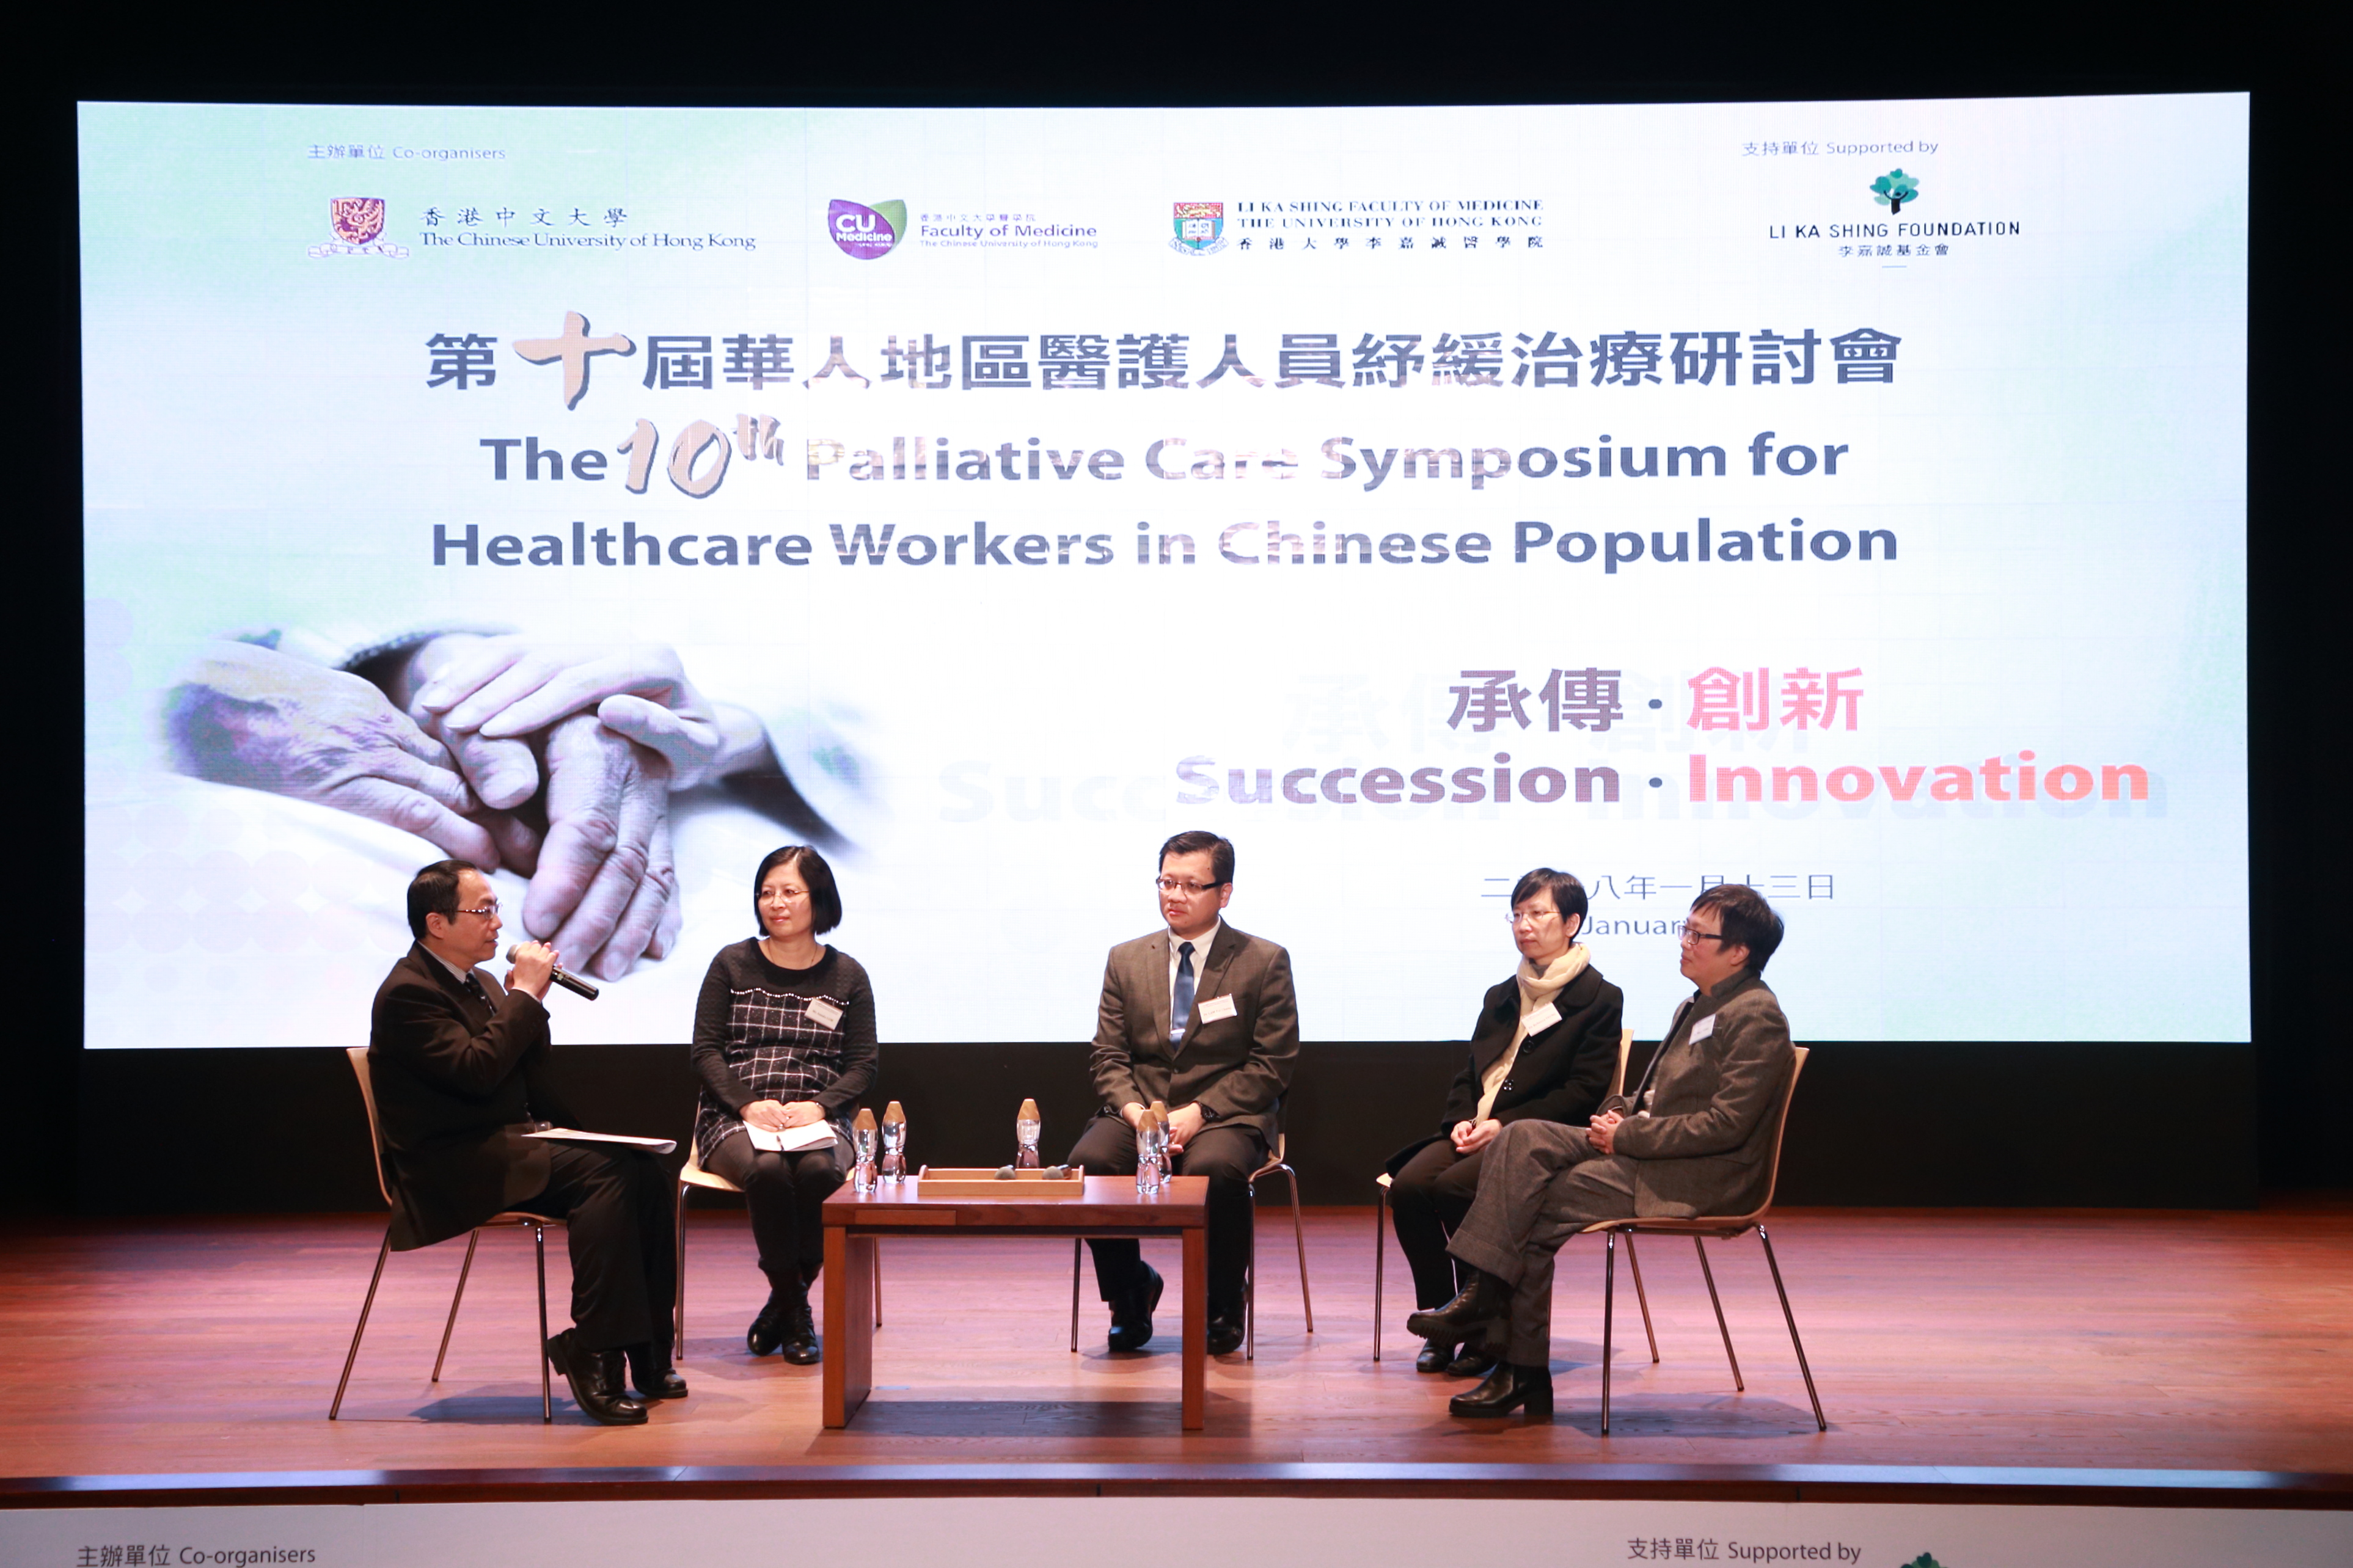 多位專家在座談會上就「香港癌症紓緩治療服務的未來發展」發表意見。